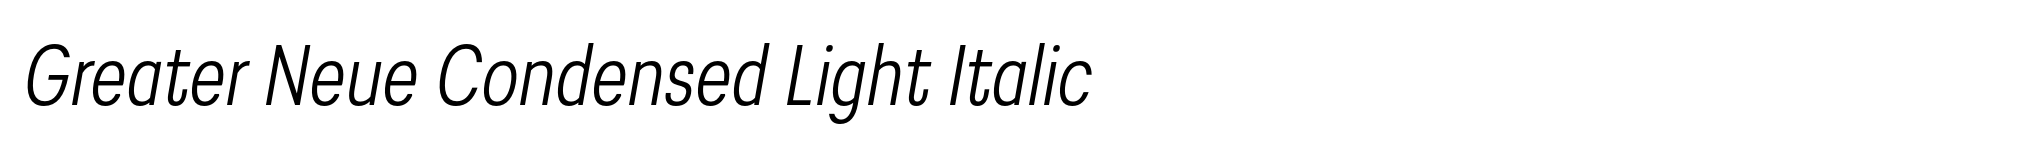 Greater Neue Condensed Light Italic image